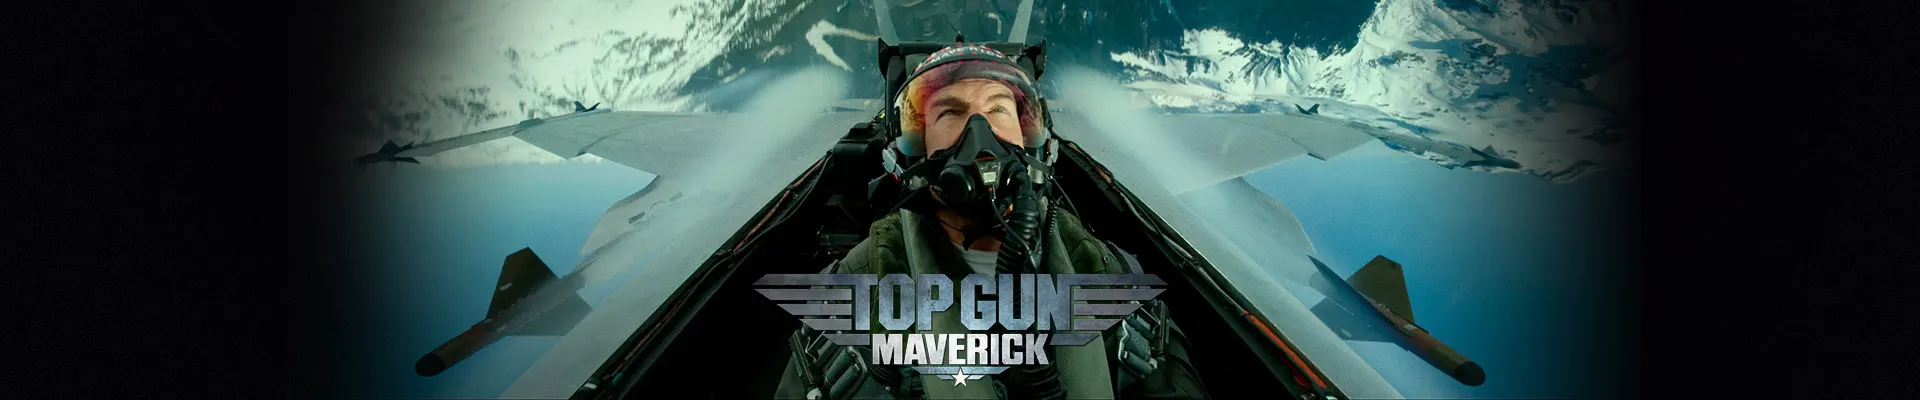 Top Gun 2 : Maverick (2022) ท็อปกัน ฟ้าเหนือฟ้า 2